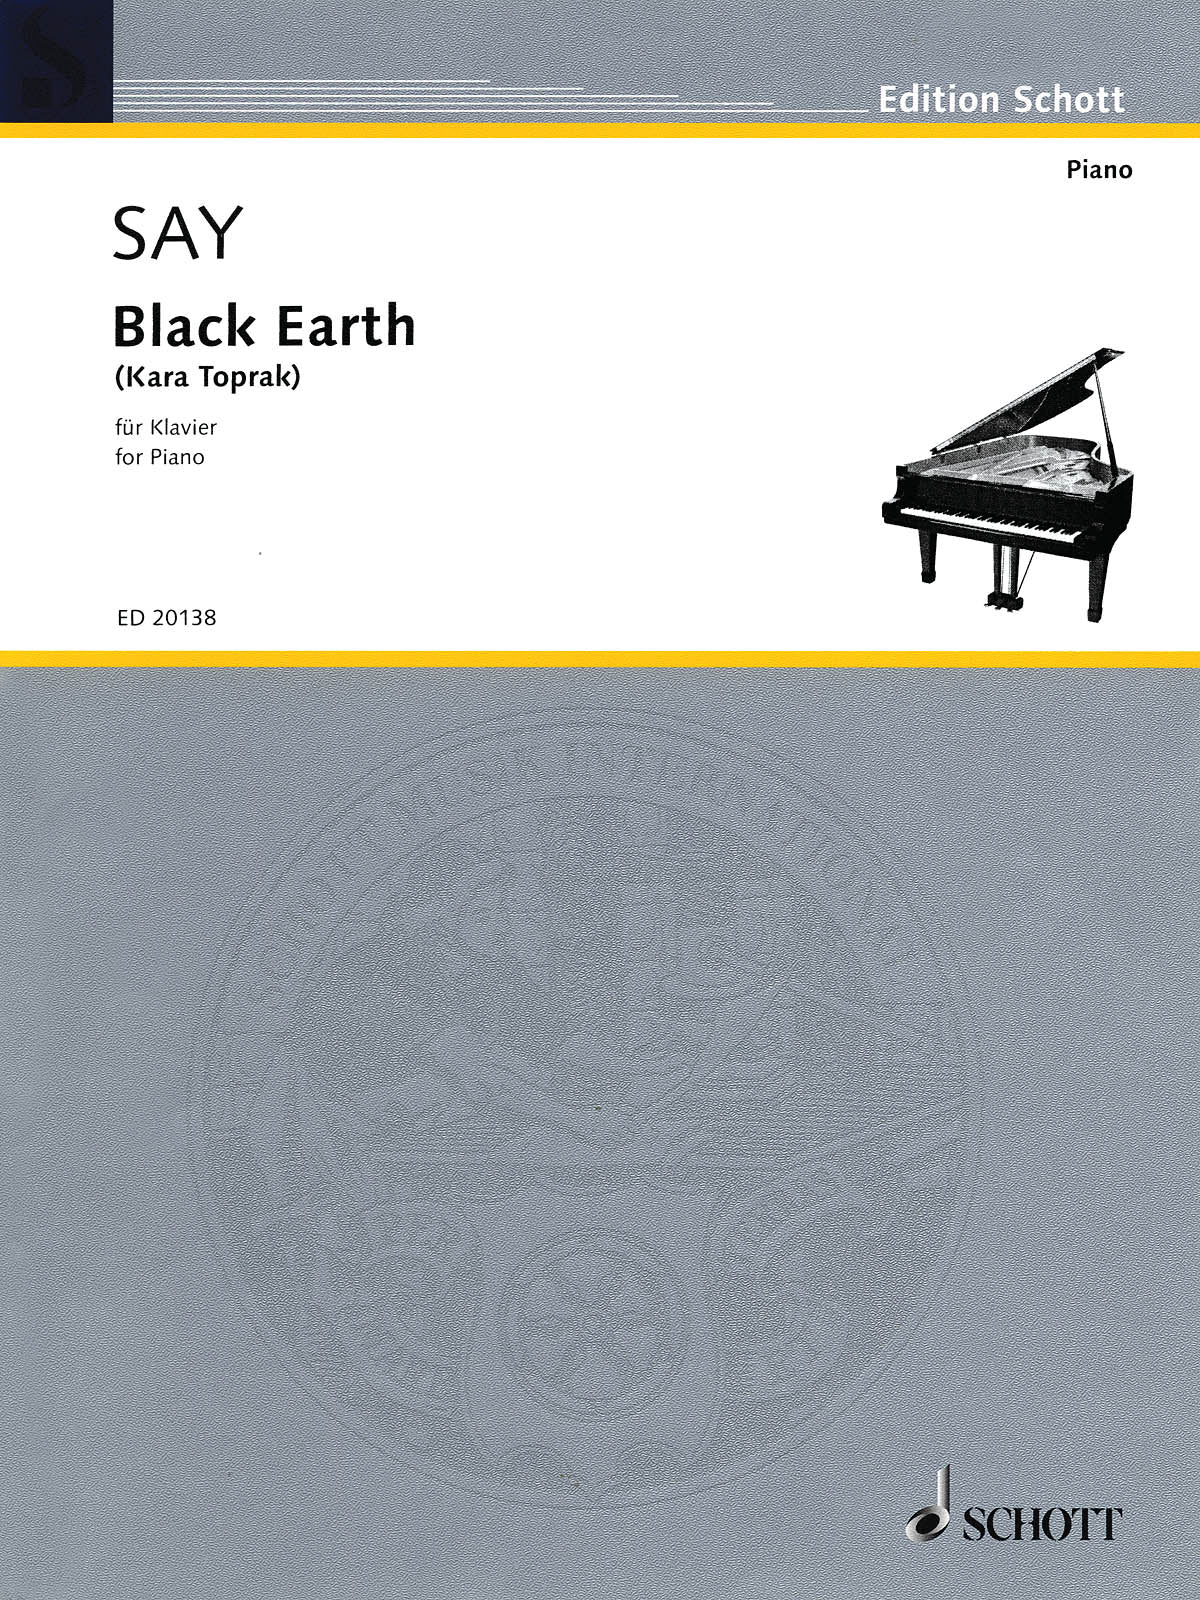 Say: Black Earth, Op. 8